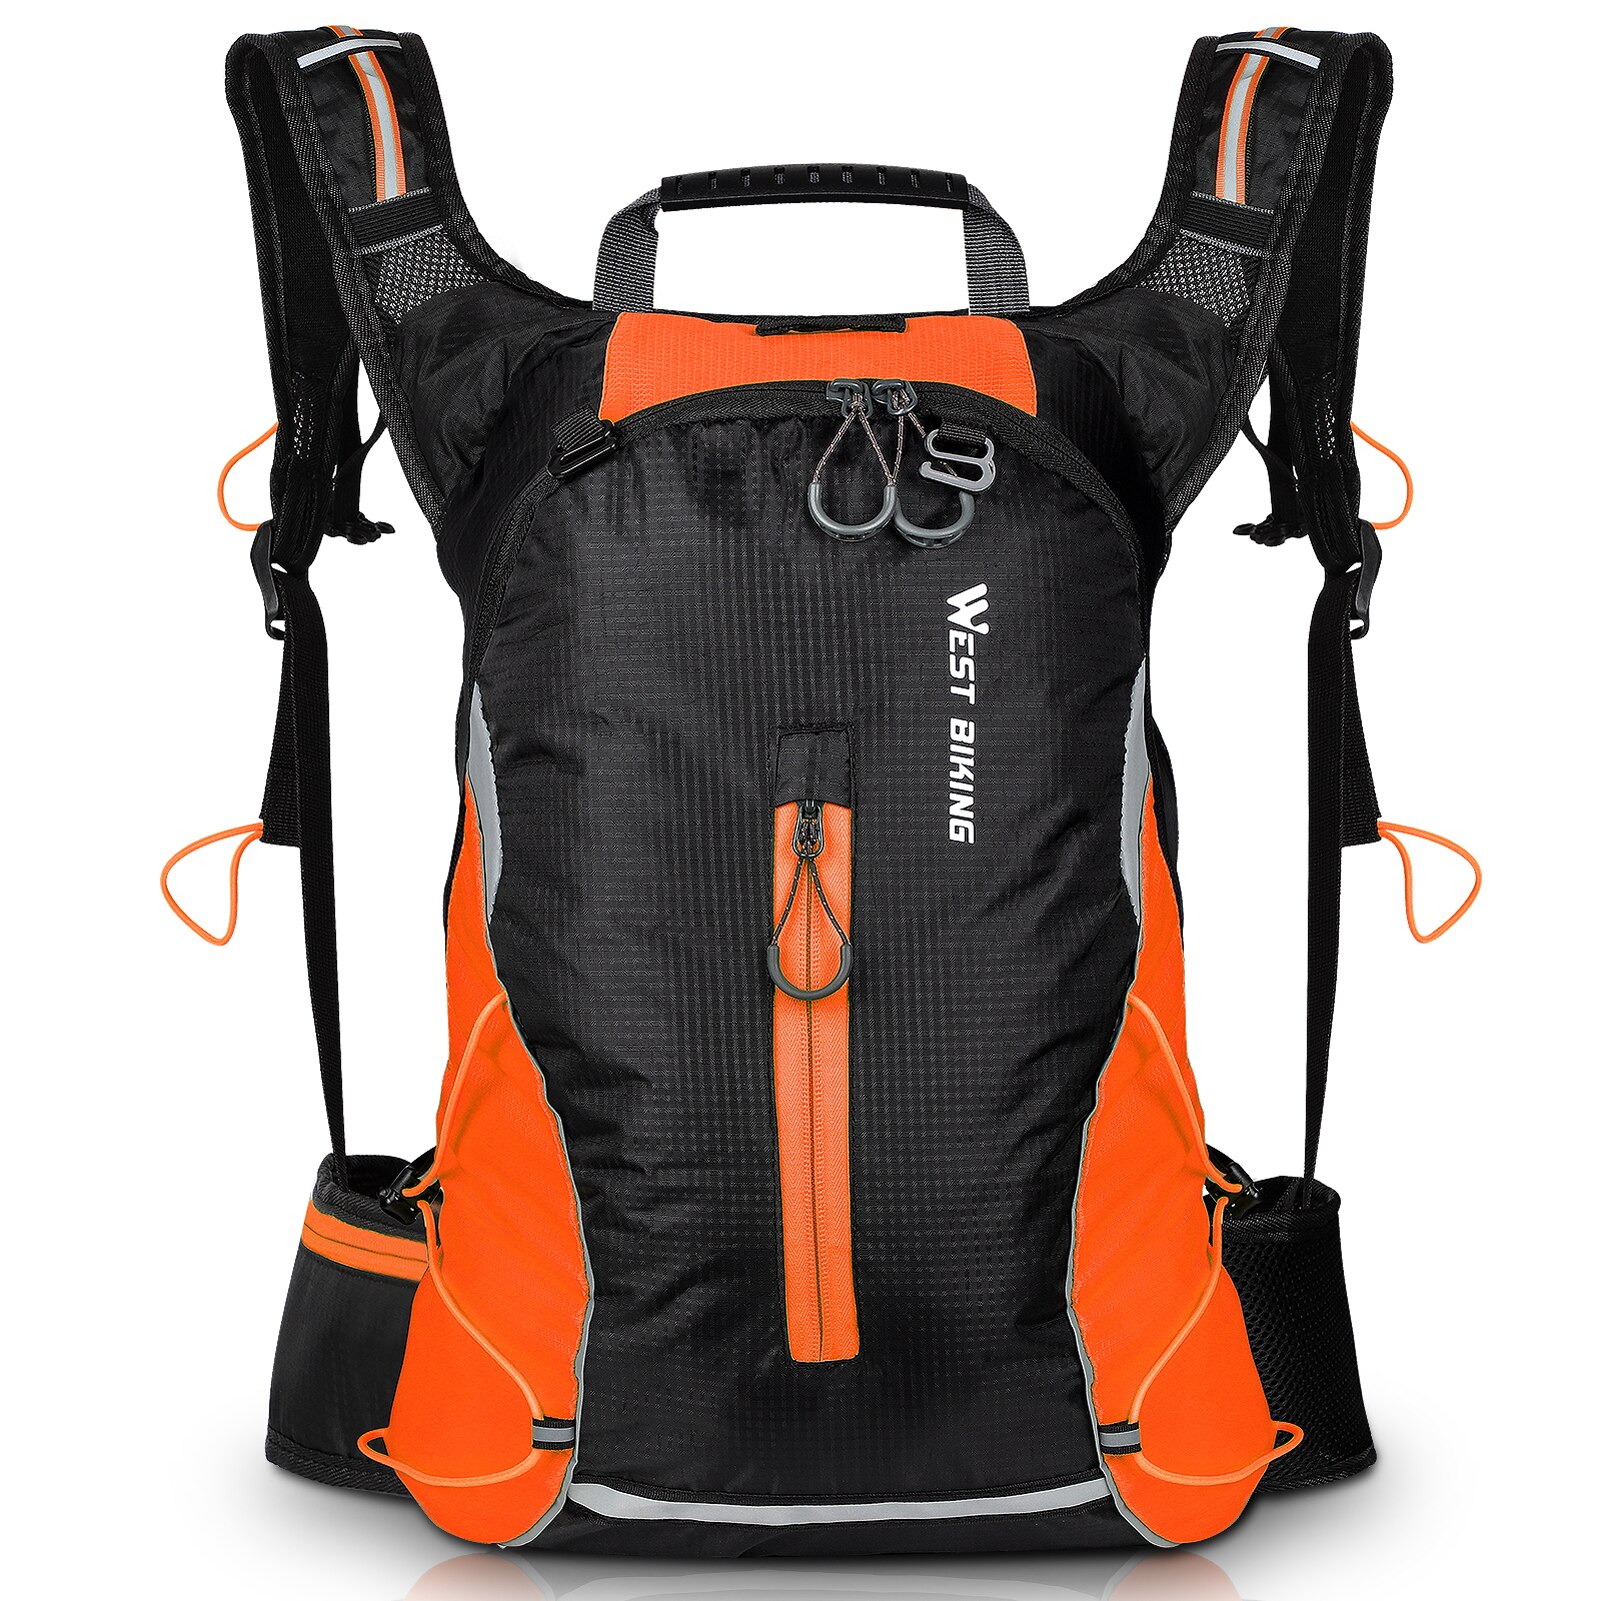 West biking 16l cykling rygsæk mountainbike taske udendørs rygsæk fritid lys rejsetaske rideudstyr: Orange